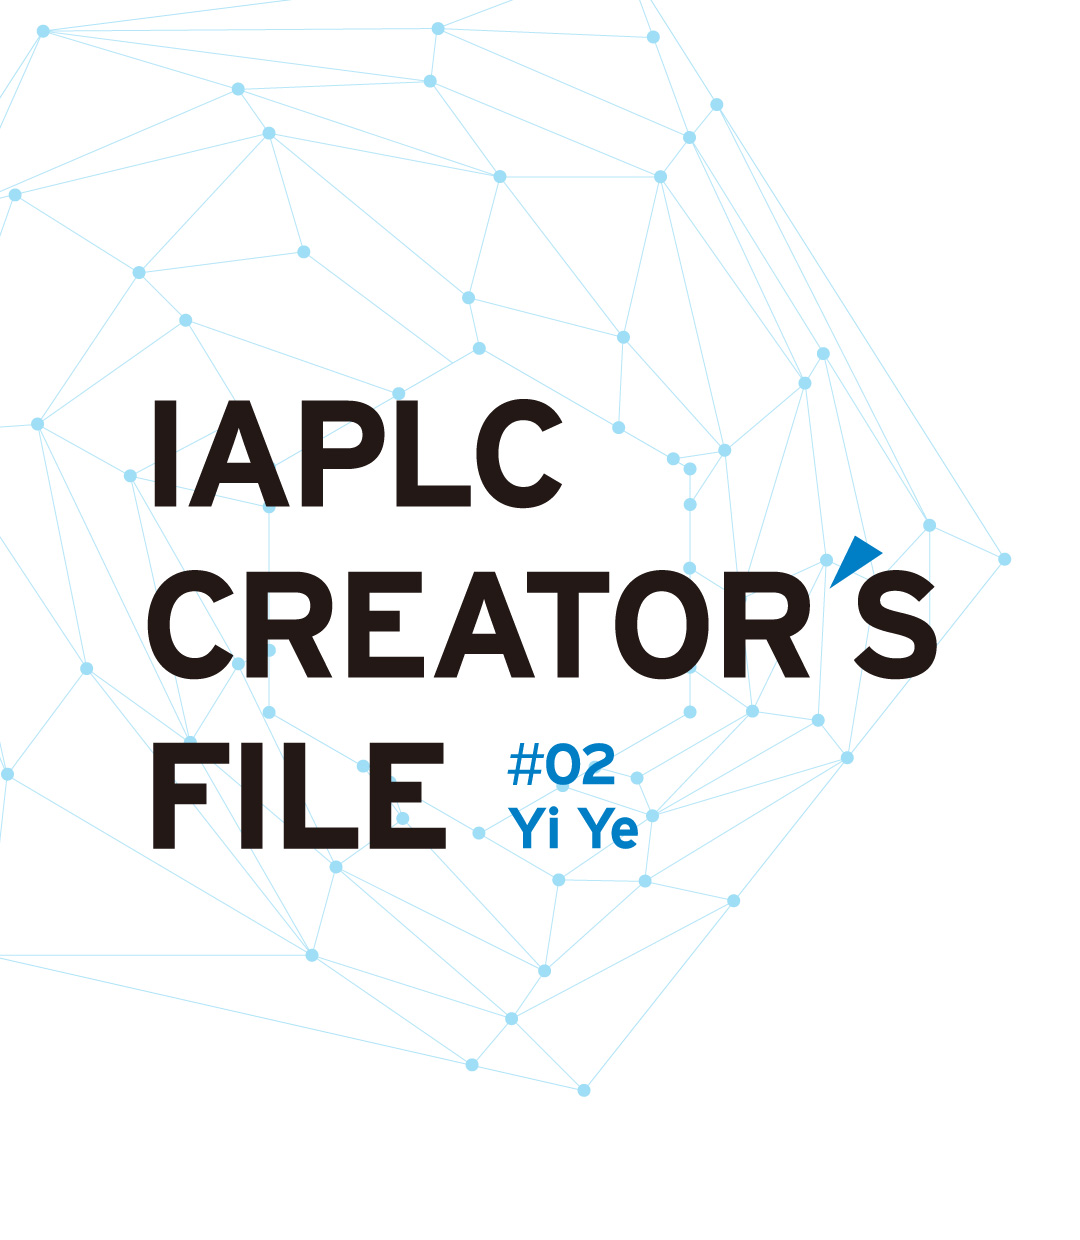 IAPLC CREATOR’S FILE #02 Yi Ye